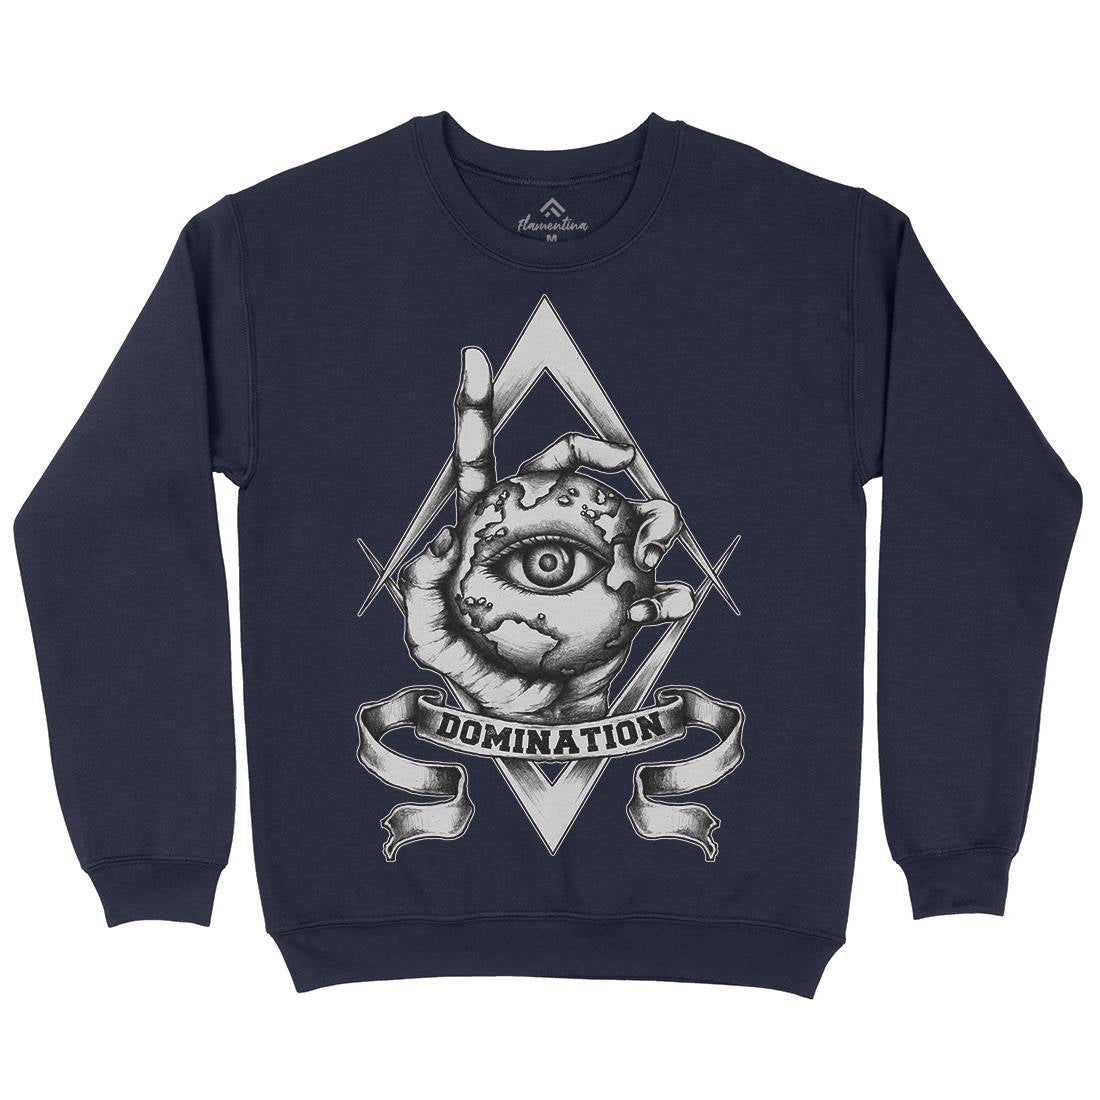 Domination Kids Crew Neck Sweatshirt Illuminati A418